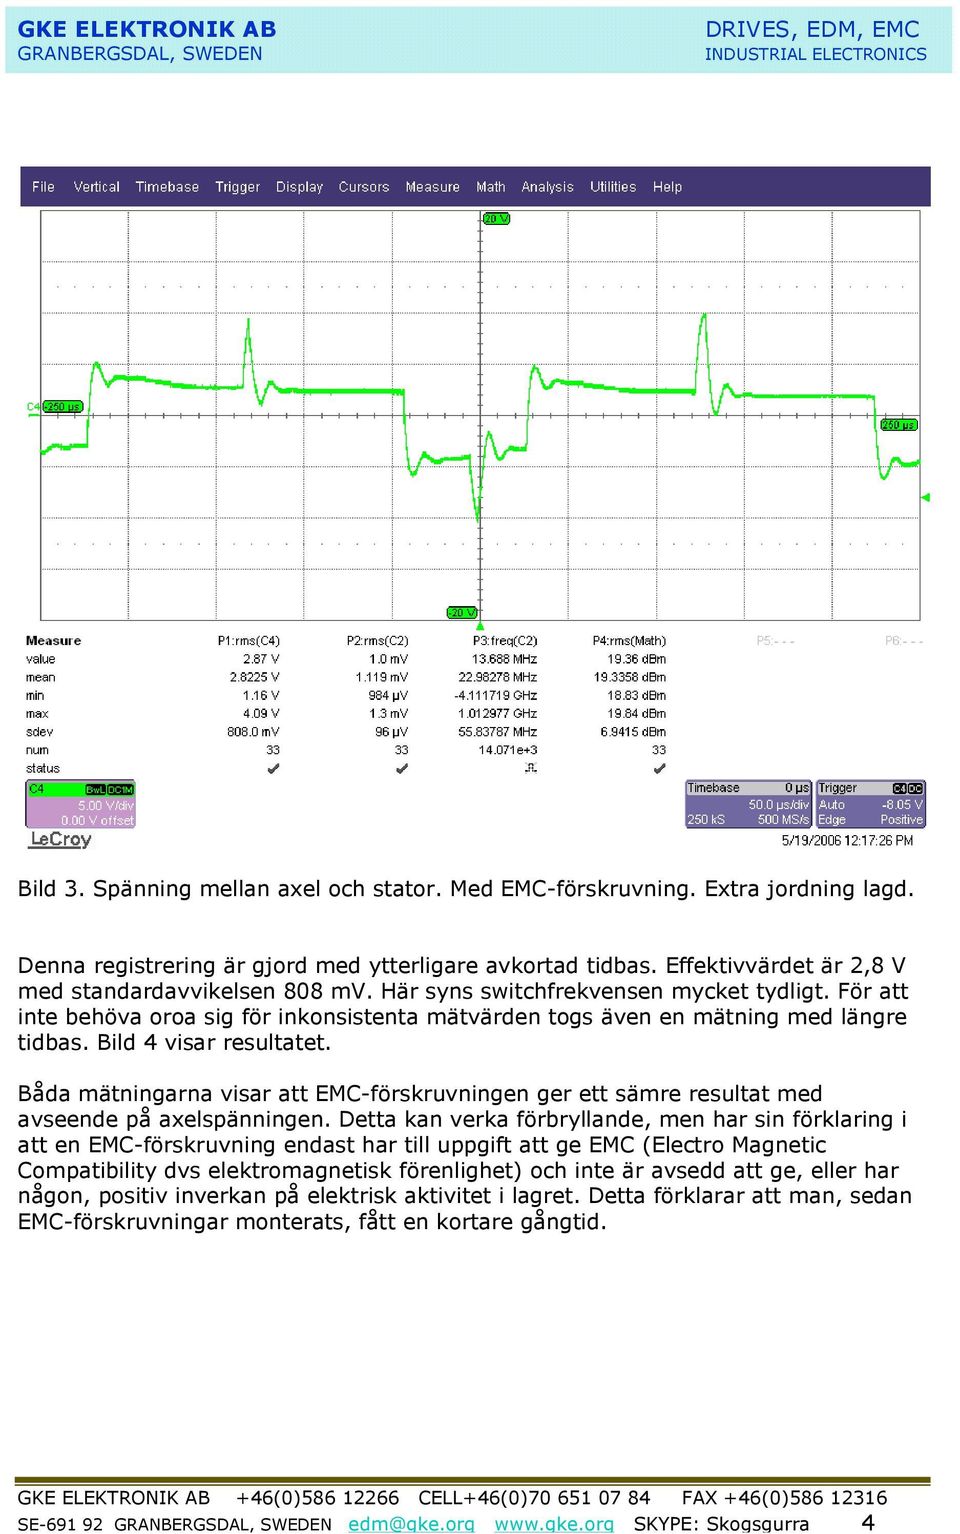 Båda mätningarna visar att EMC-förskruvningen ger ett sämre resultat med avseende på axelspänningen.